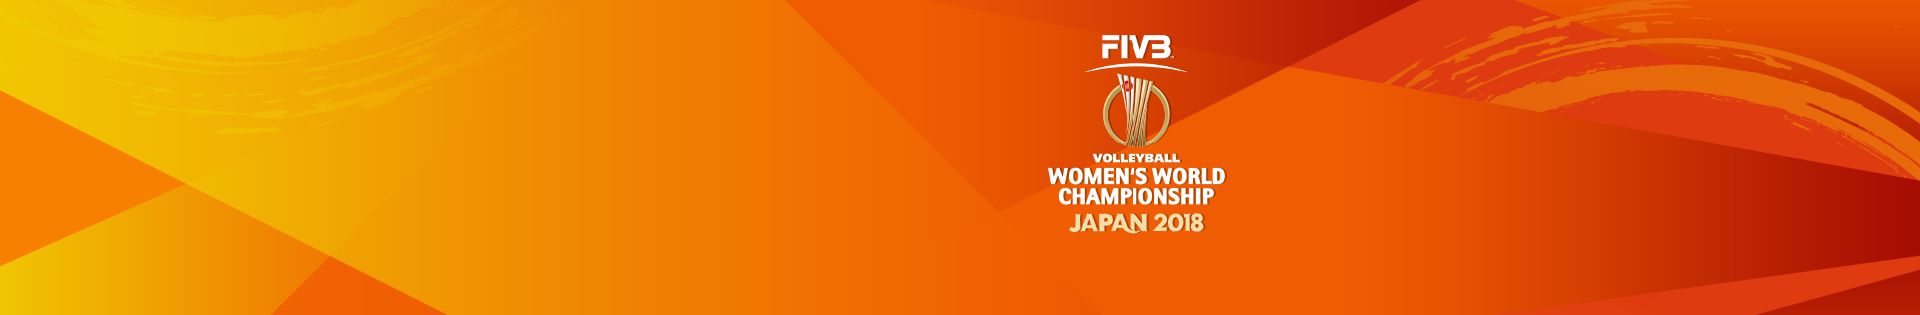 2018 세계여자배구선수권대회 프로그램 이미지